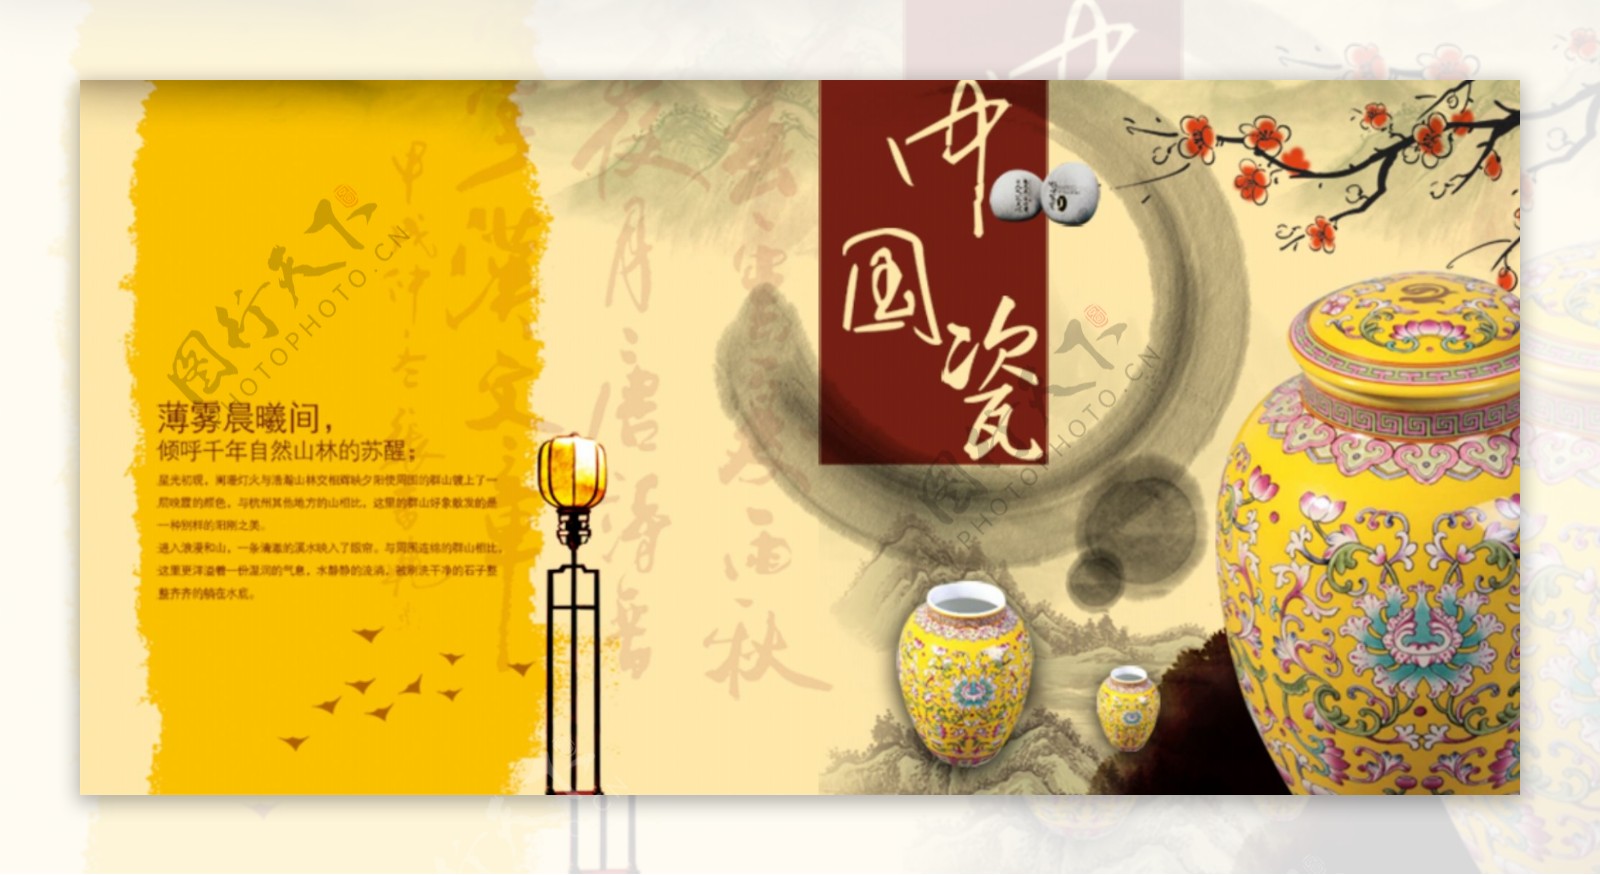 中国瓷器店铺首页展示海报